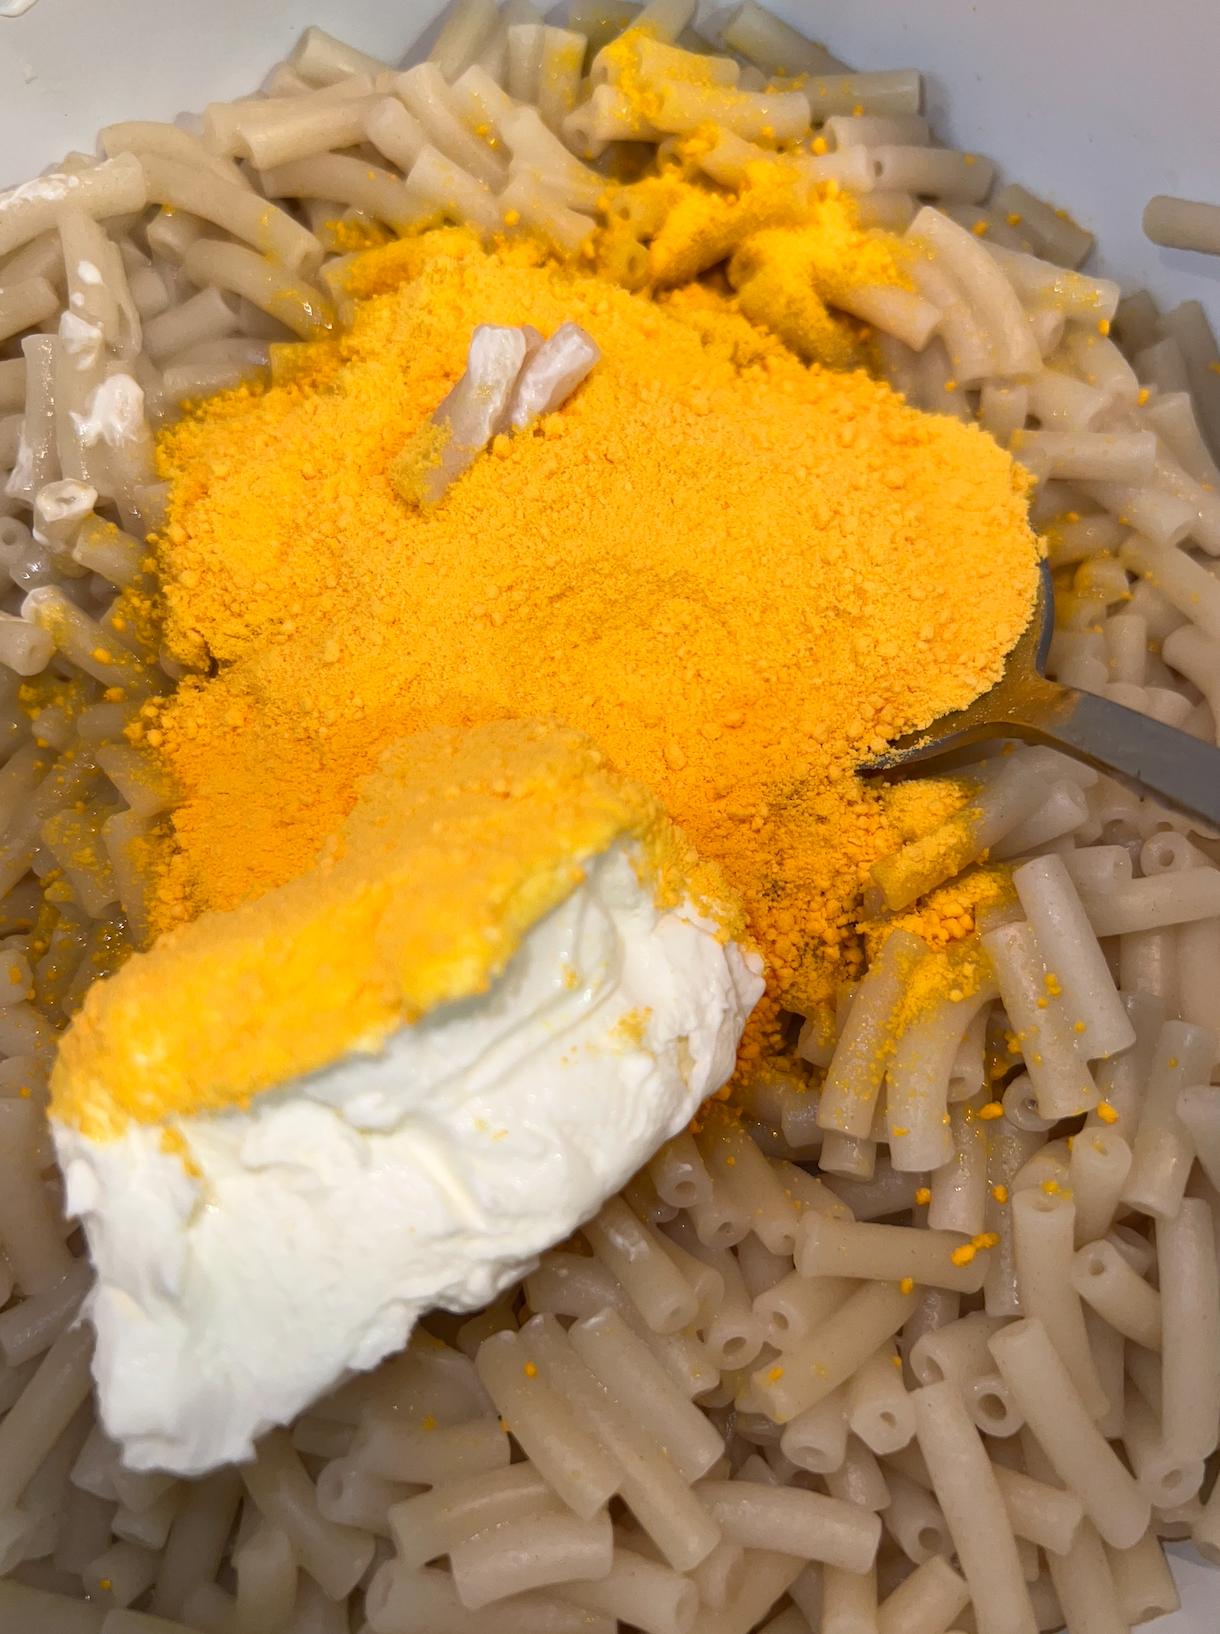 Macaroni, cheese powder, and cream cheese